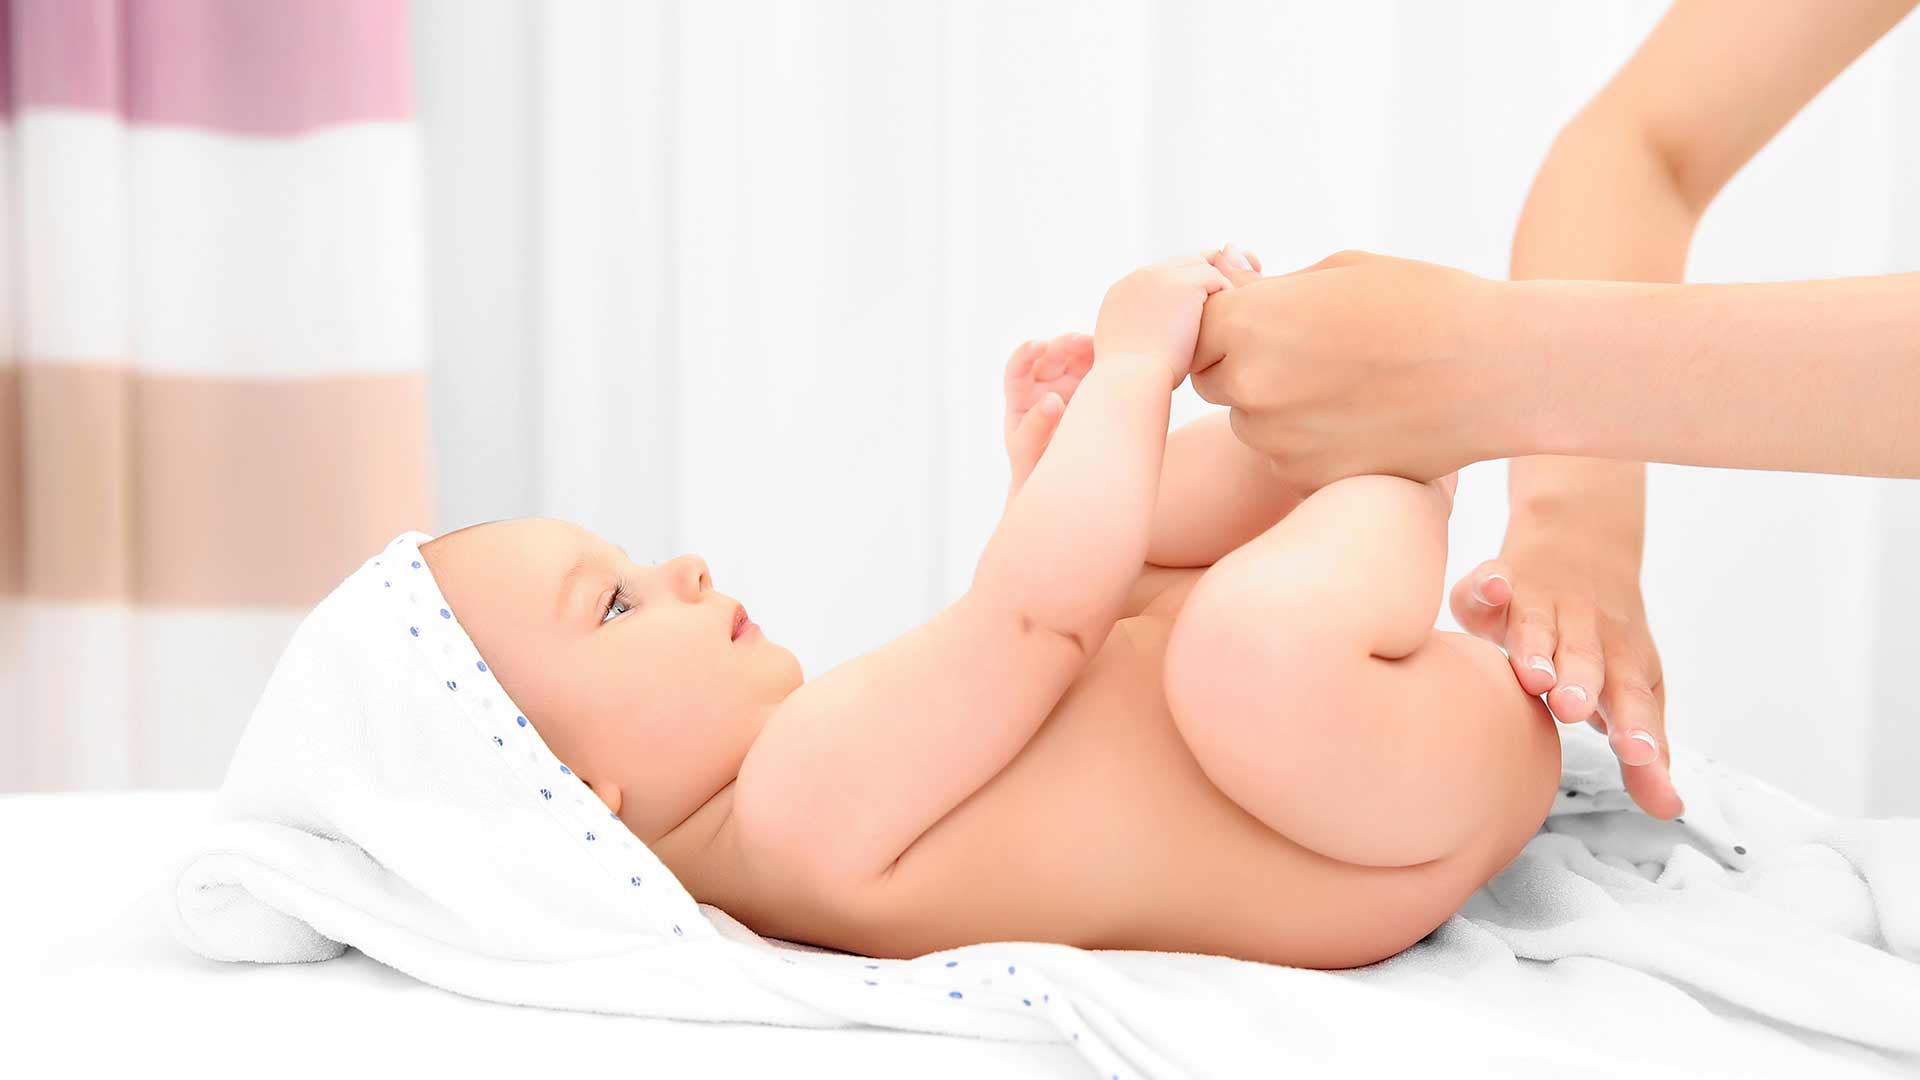 Los mejores productos para cuidar la piel de tu recién nacido - Vive tu piel